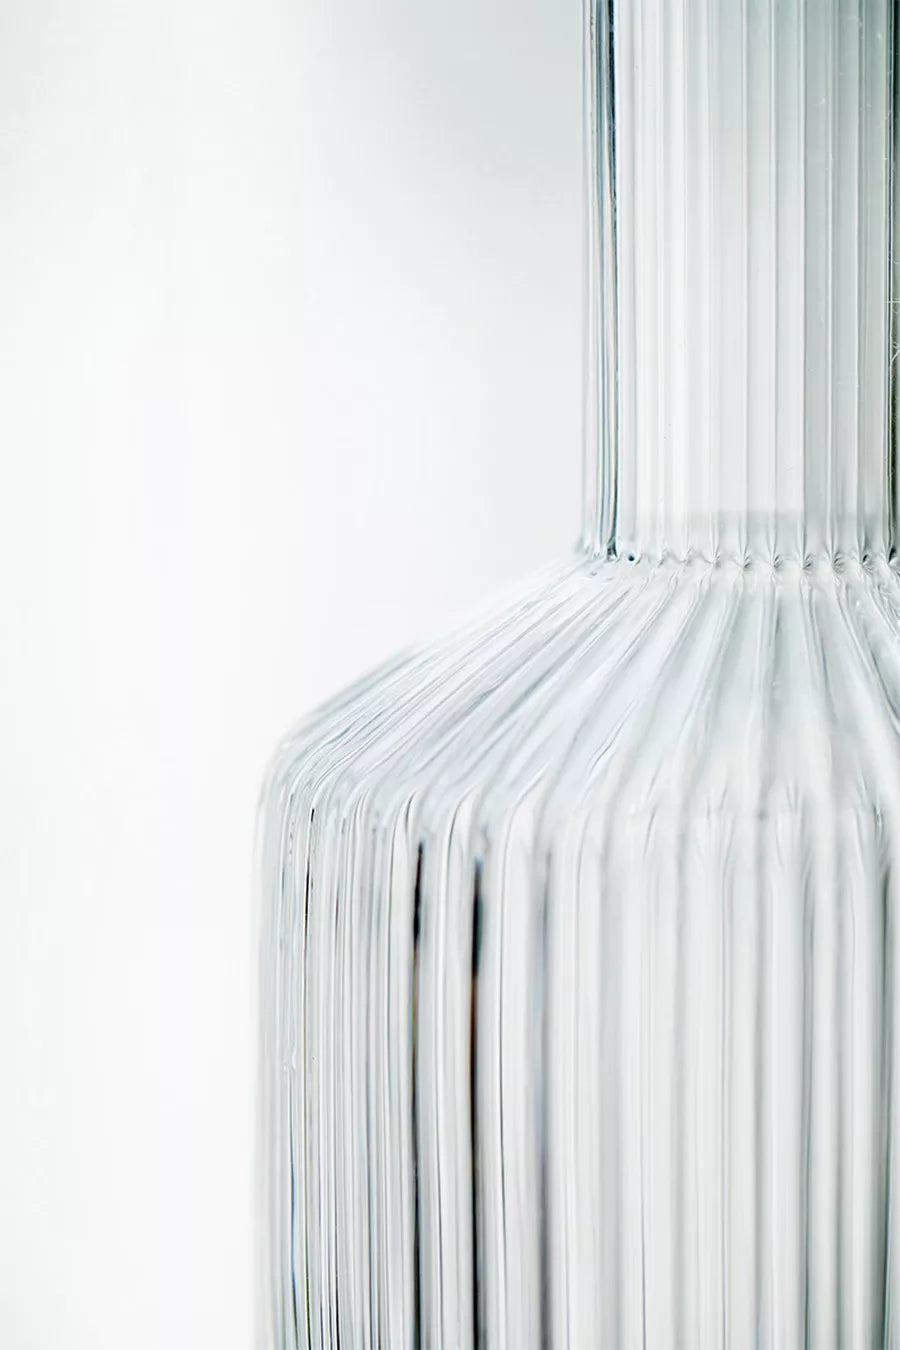 Botellas con vaso a juego de vidrio transparente útiles y decorativas